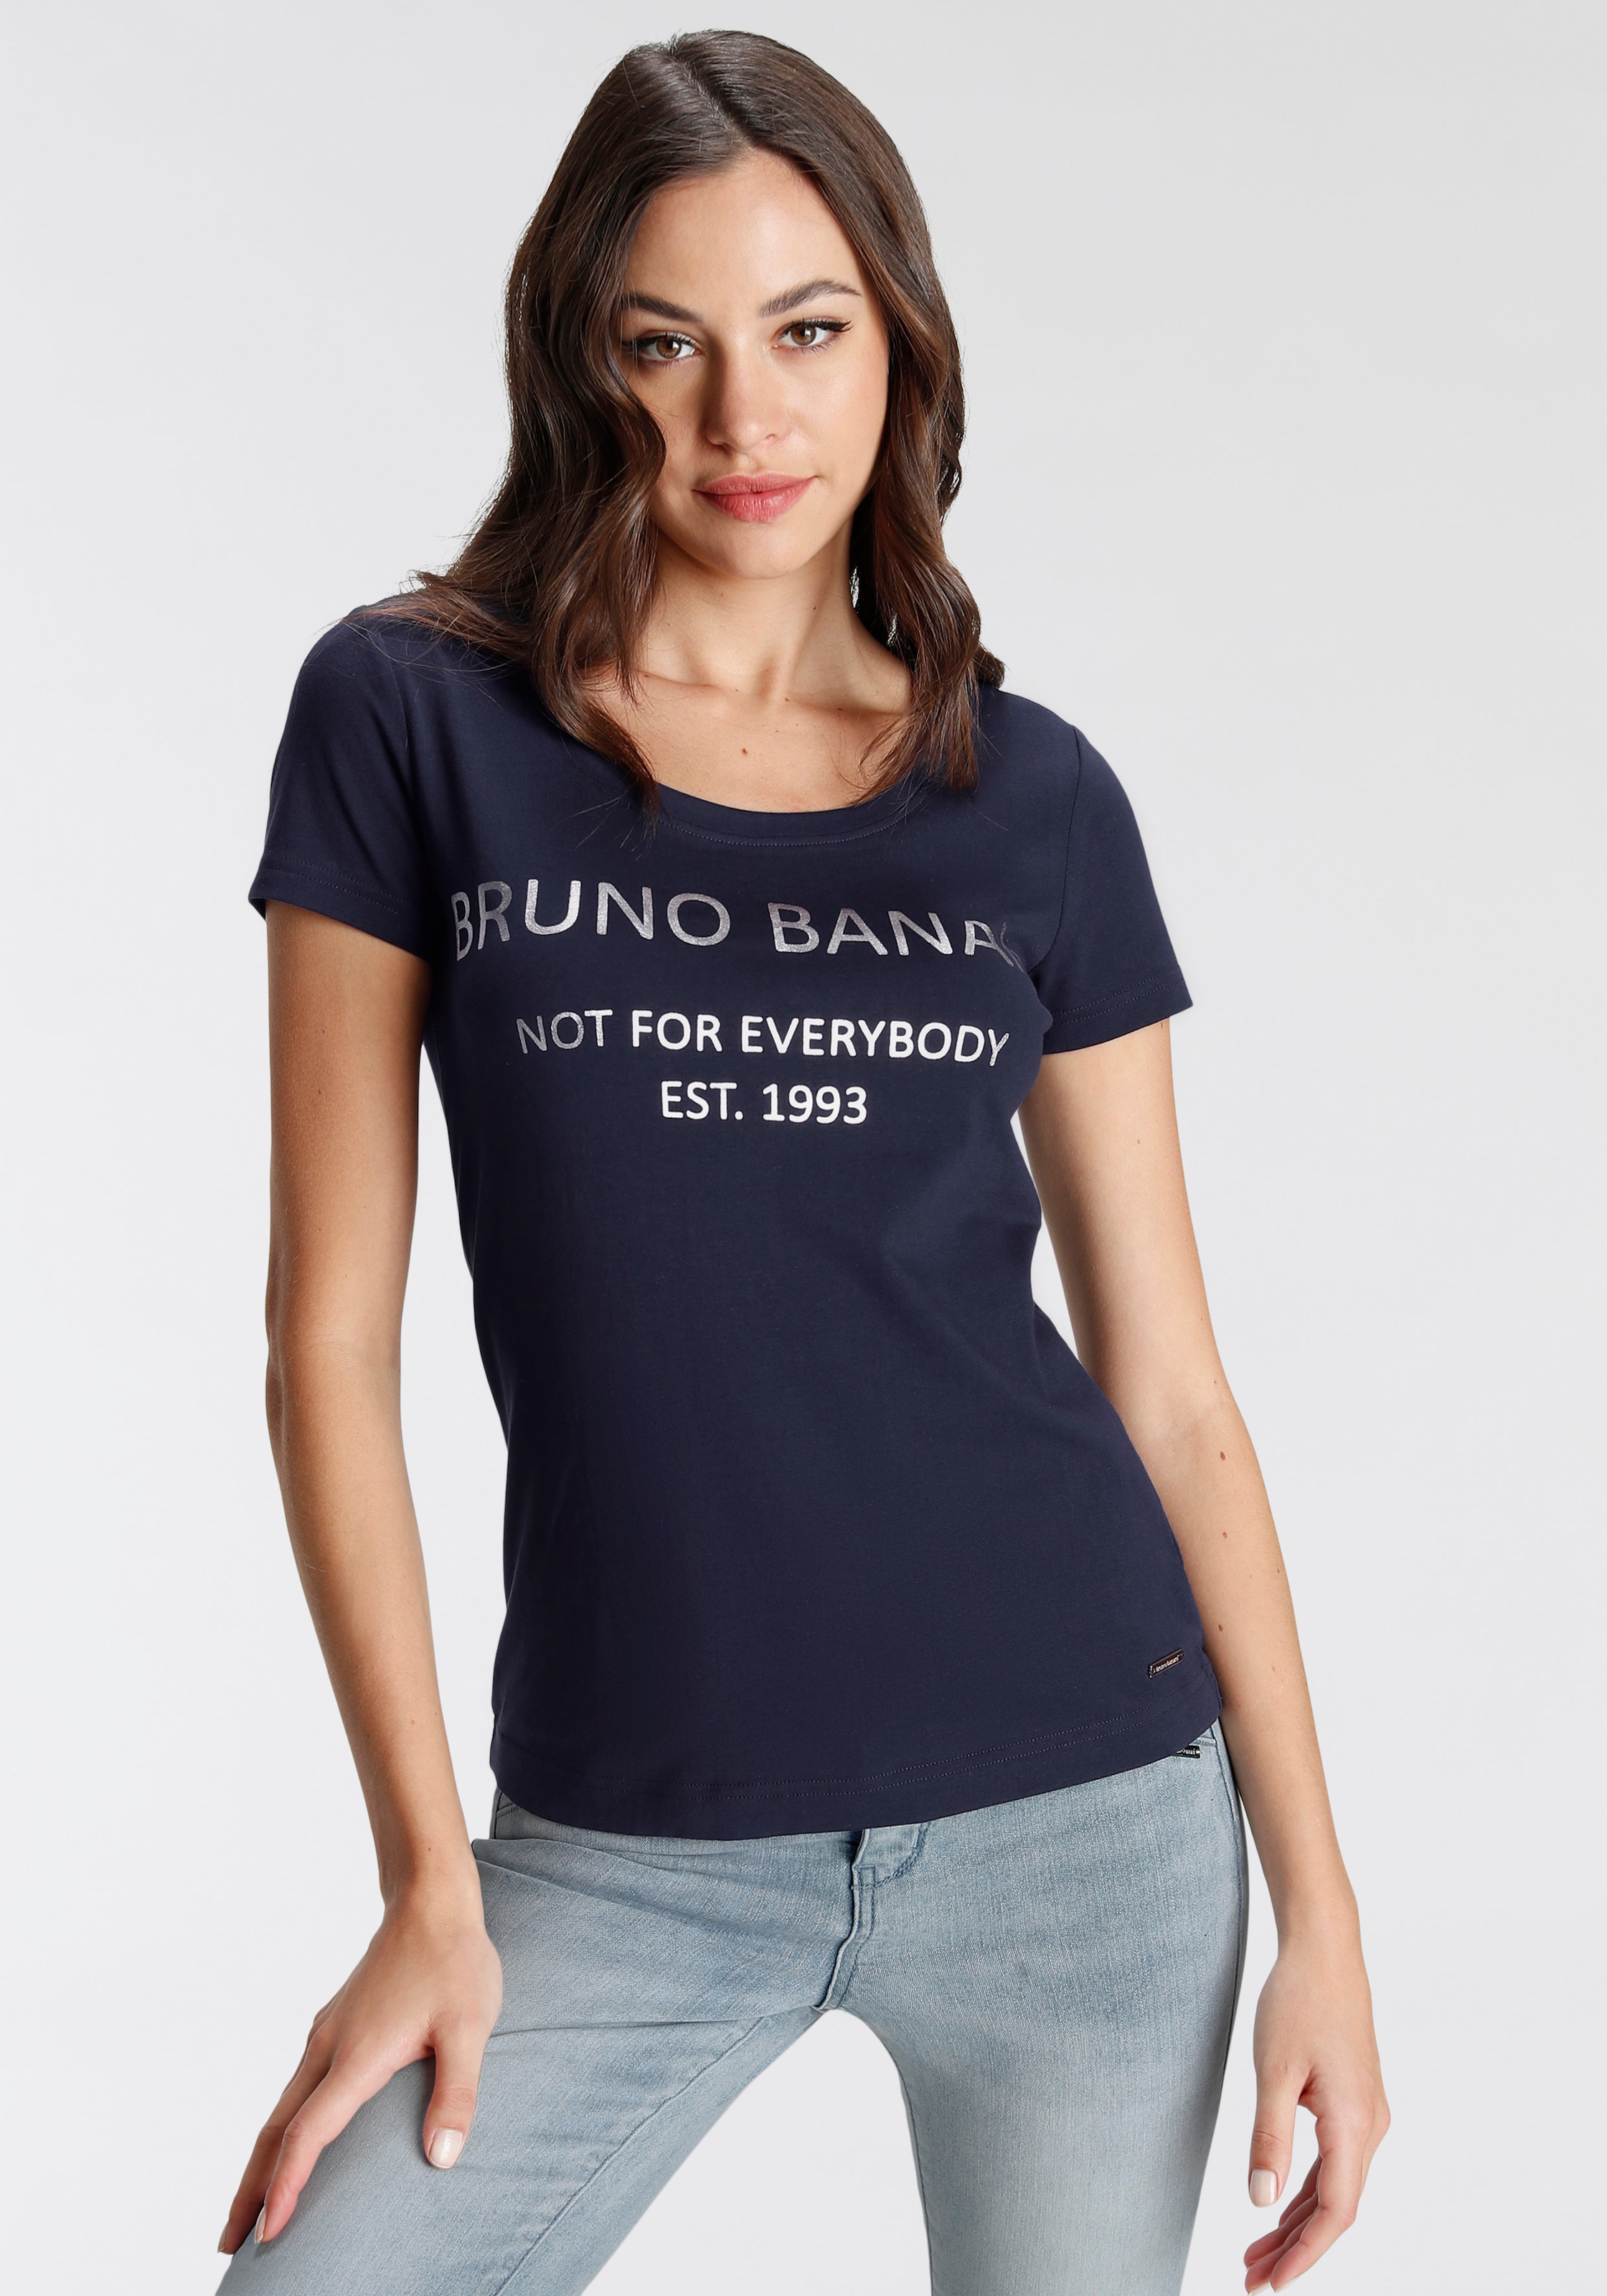 Bruno Banani T-Shirt Damen kaufen Preisvergleich Günstig im 